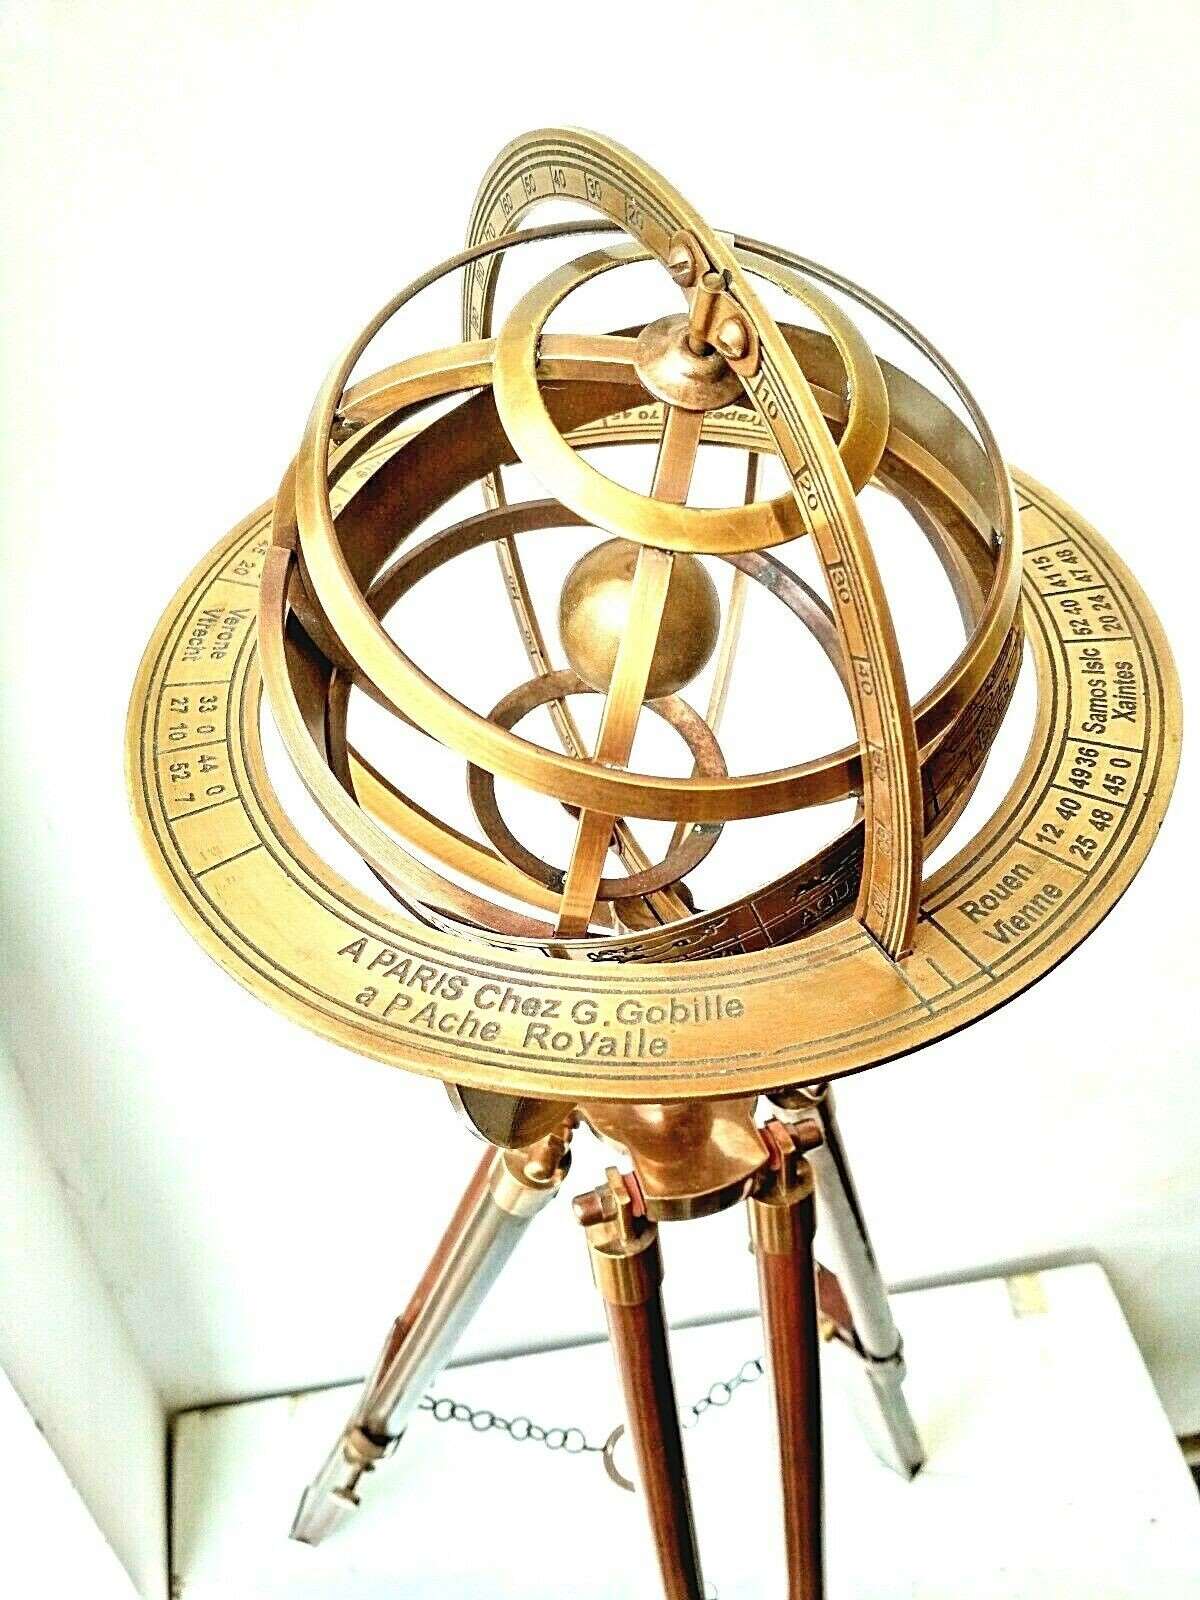 Brass Armillary Globe With Tripod Stand